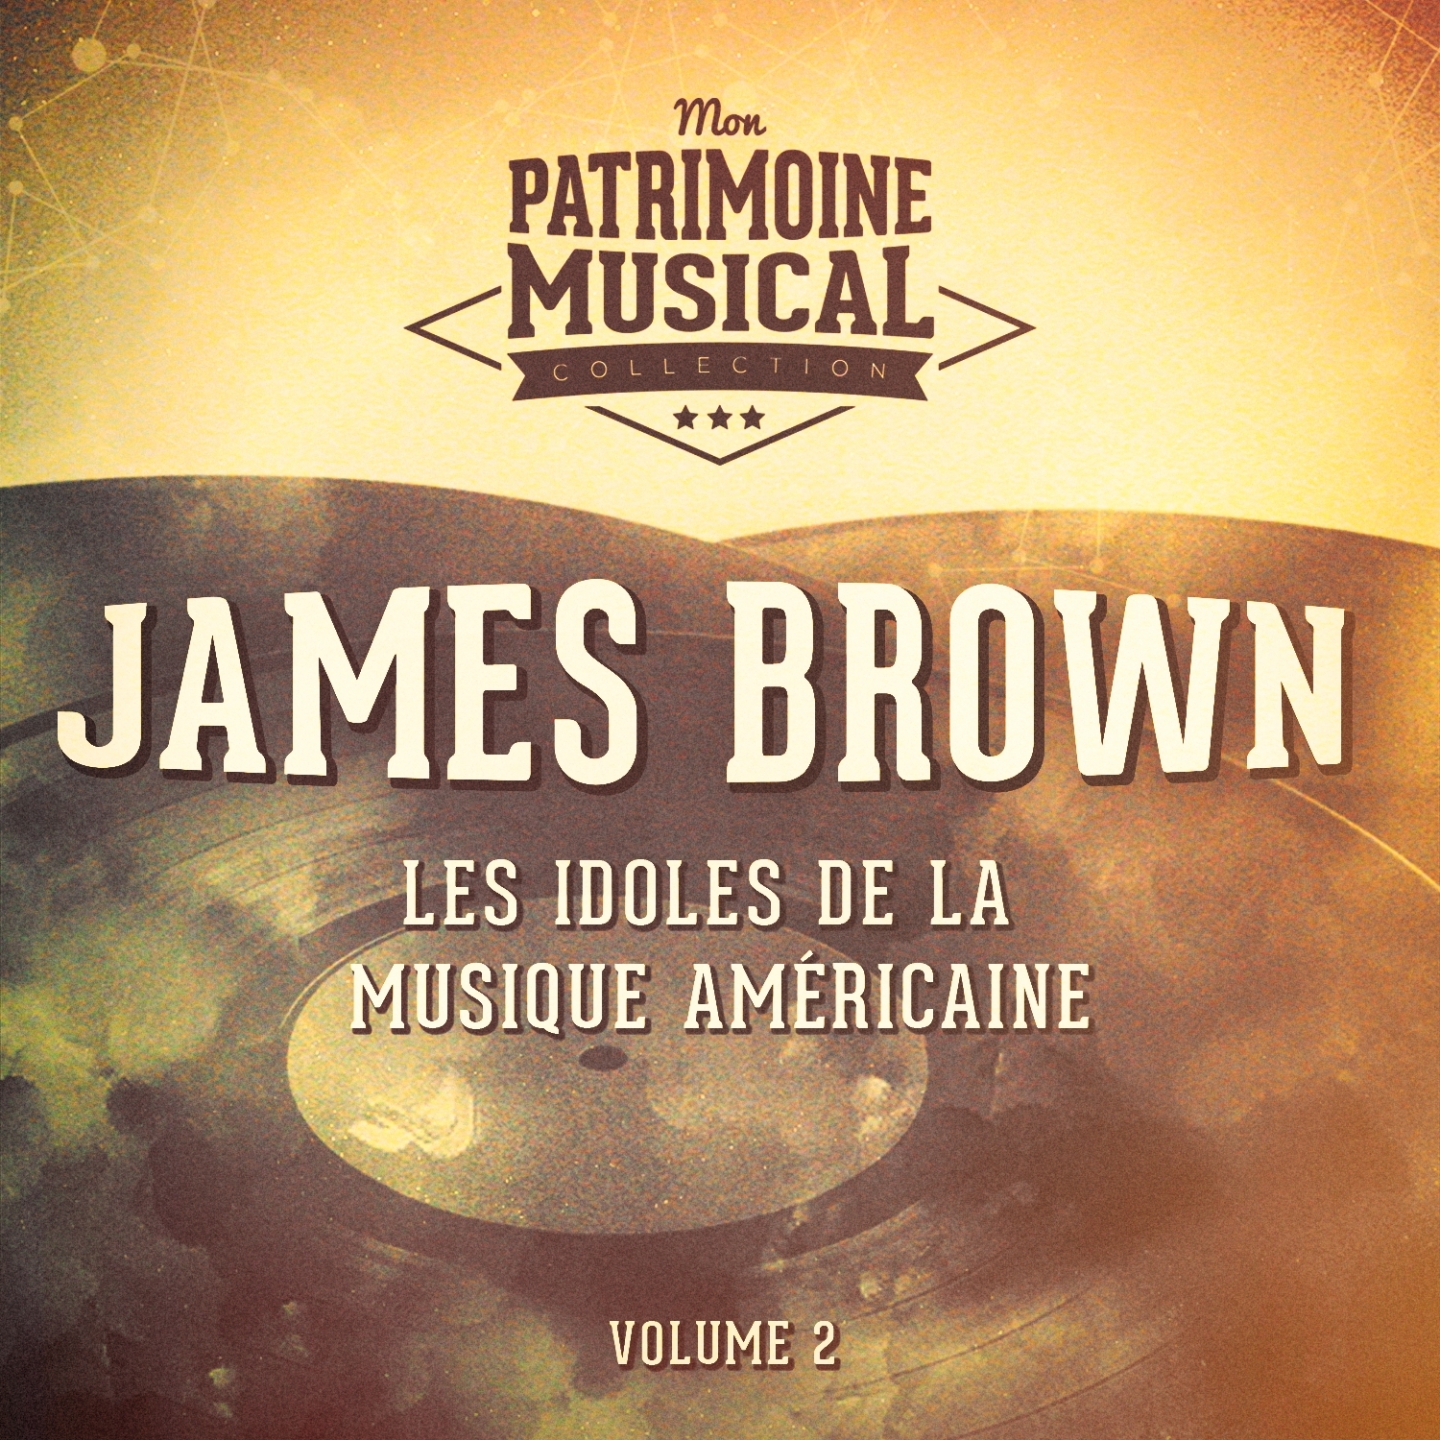 Les Idoles De La Musique Ame ricaine: James Brown, Vol. 2